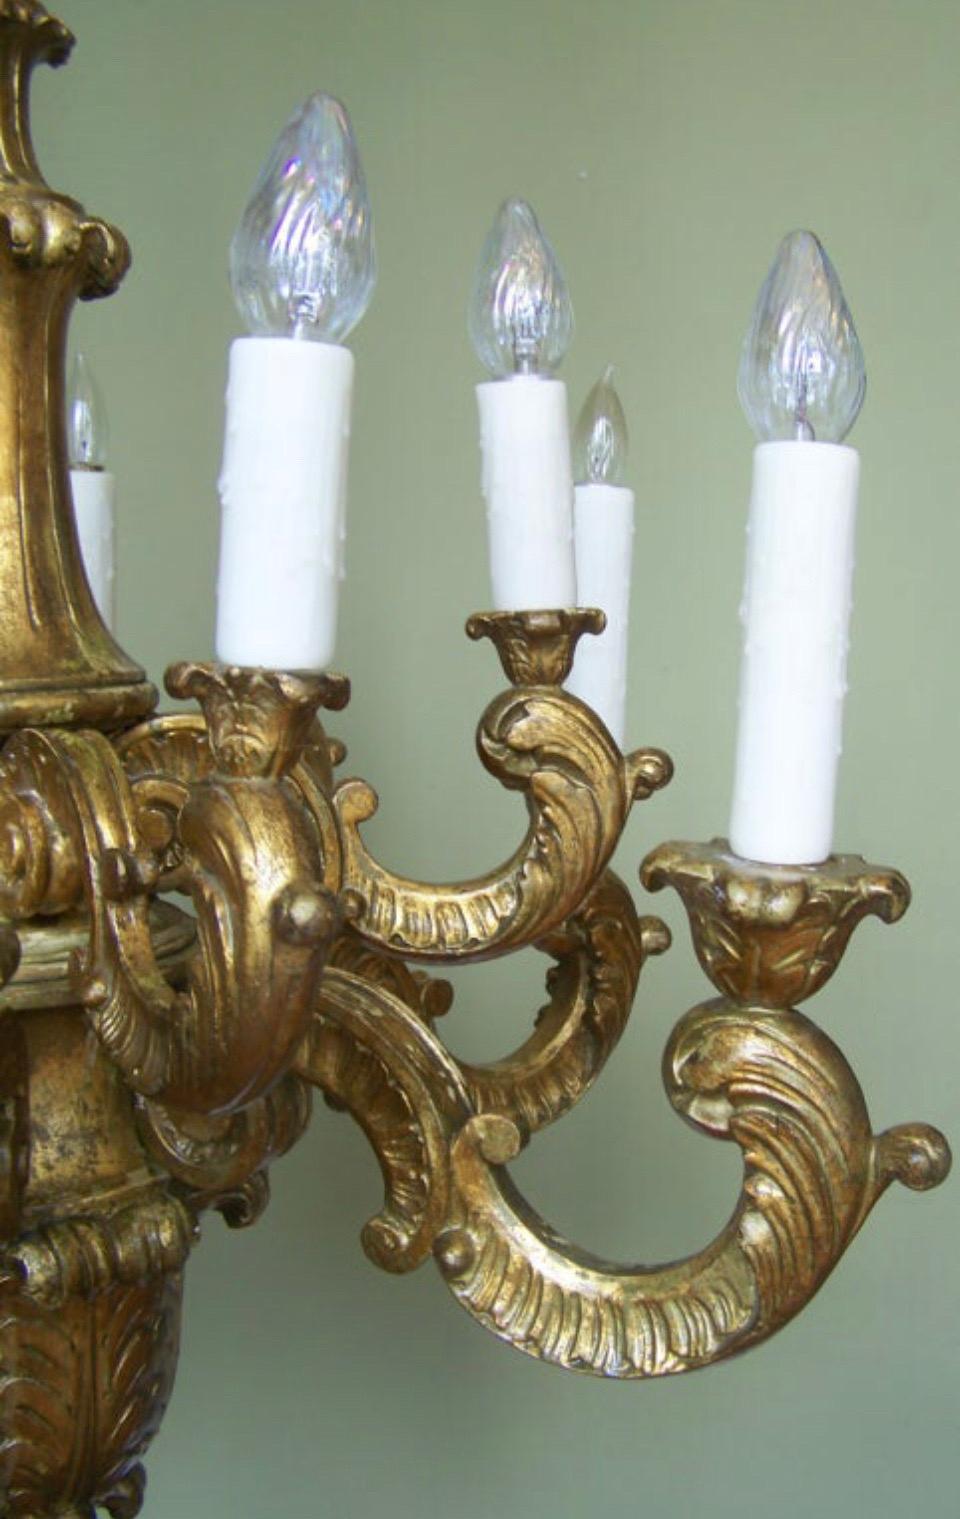 Der italienische, handgeschnitzte Kronleuchter aus vergoldetem Holz aus dem frühen 20. Jahrhundert verfügt über zwölf Lichter in zwei Etagen. Der barocke Kronleuchter aus vergoldetem Holz hat einen beeindruckenden handgeschnitzten, gedrechselten